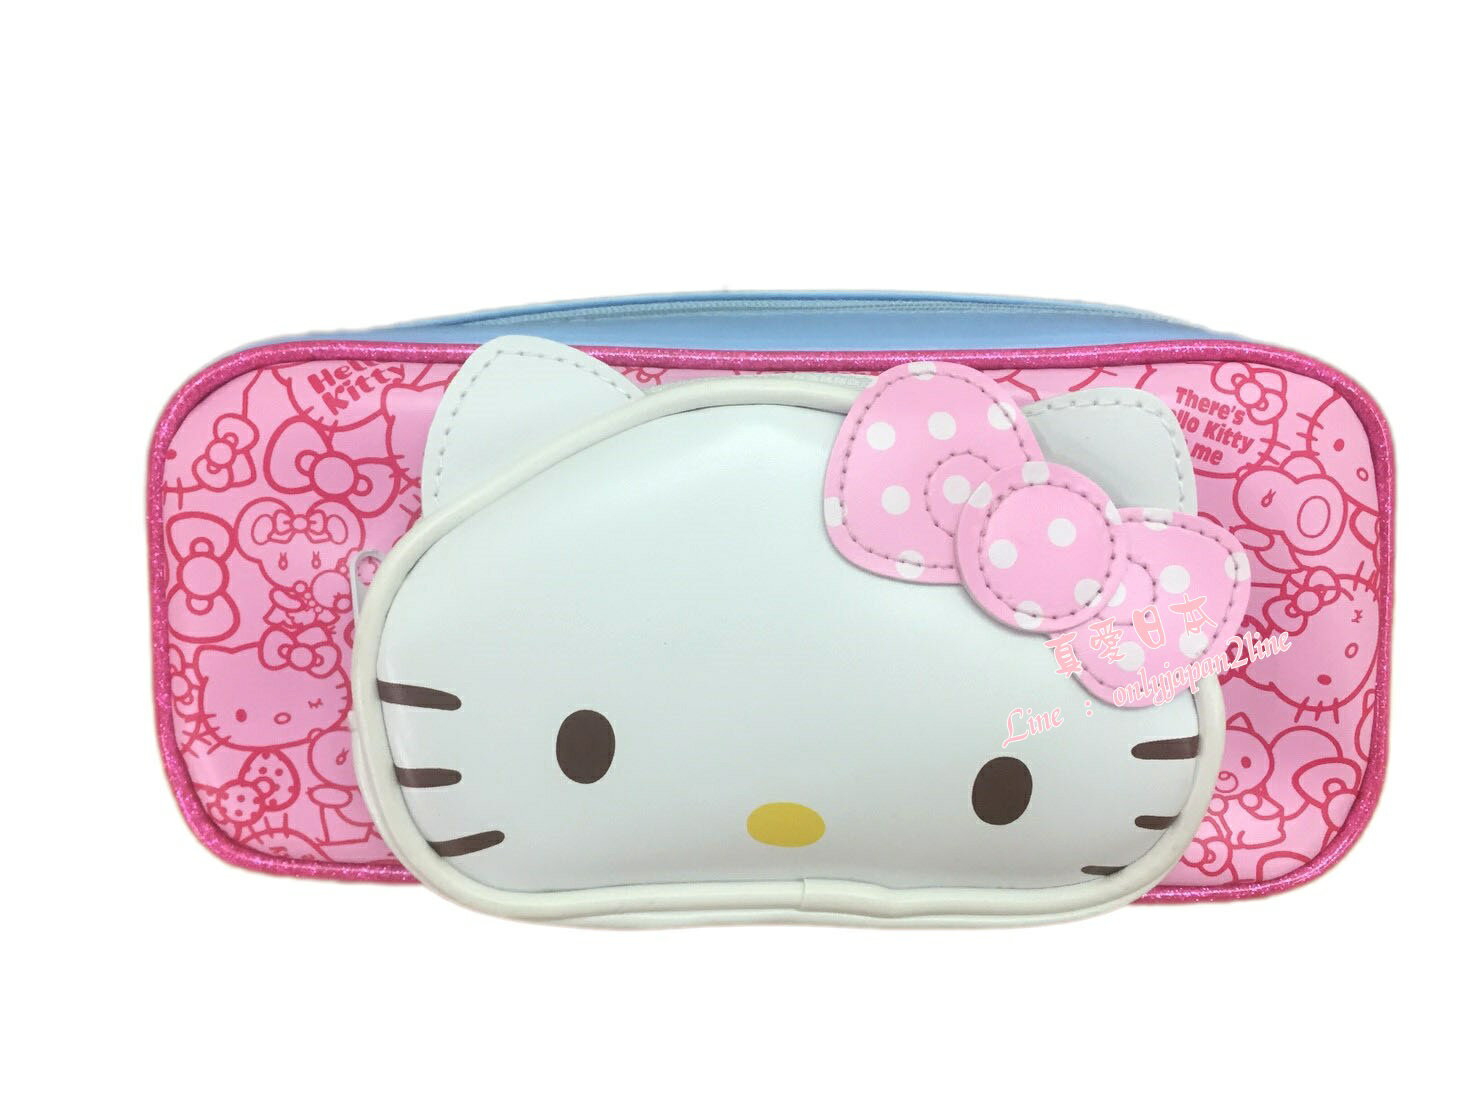 【真愛日本】16082700017 皮革立體造型筆袋-KT白點粉結三麗鷗 Hello Kitty 凱蒂貓鉛筆盒 收納 筆袋